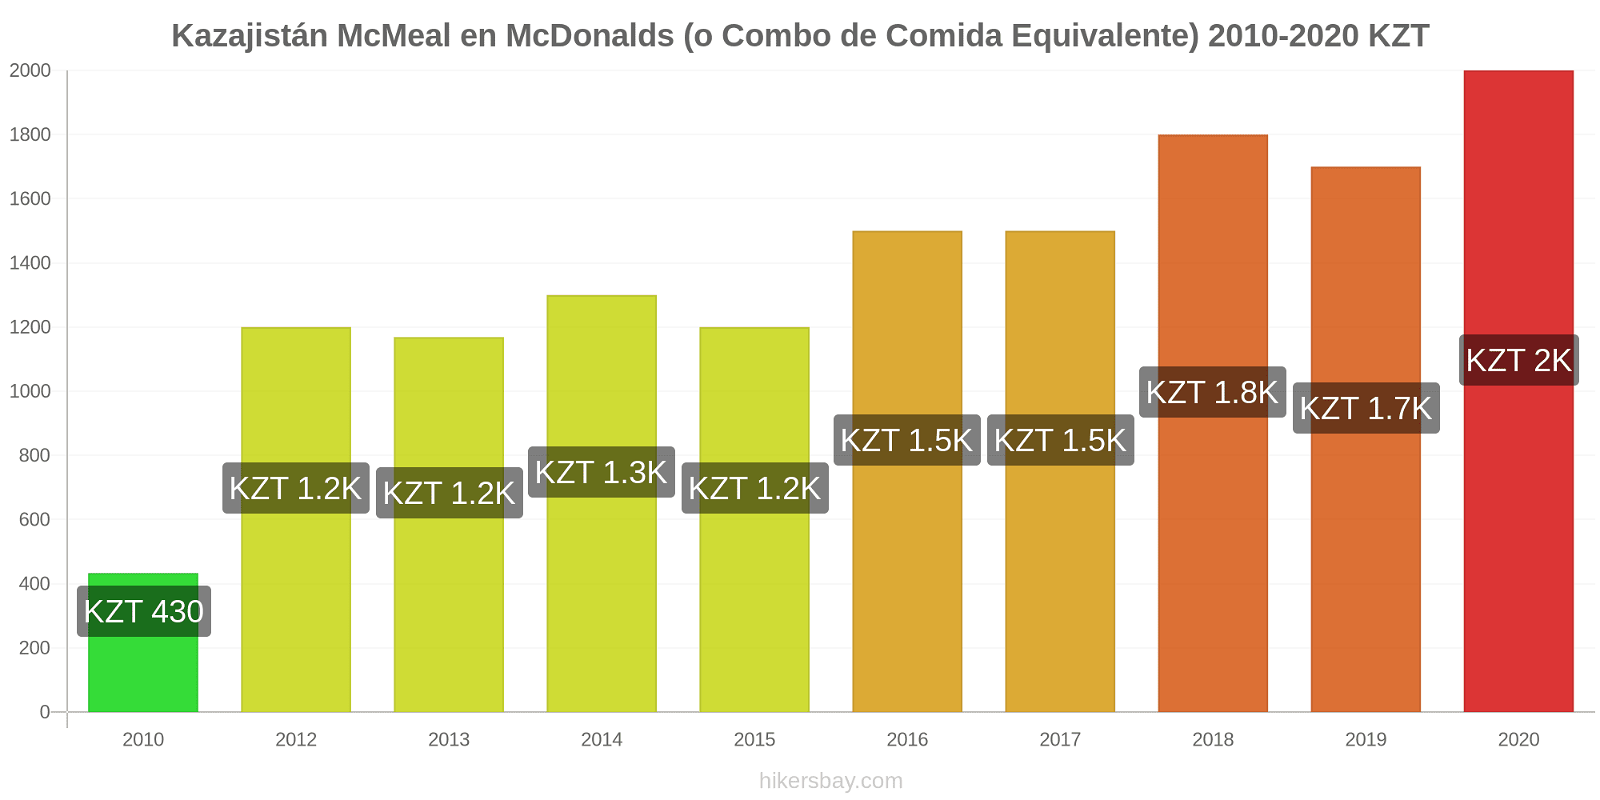 Kazajistán cambios de precios McMeal en McDonalds (o menú equivalente) hikersbay.com